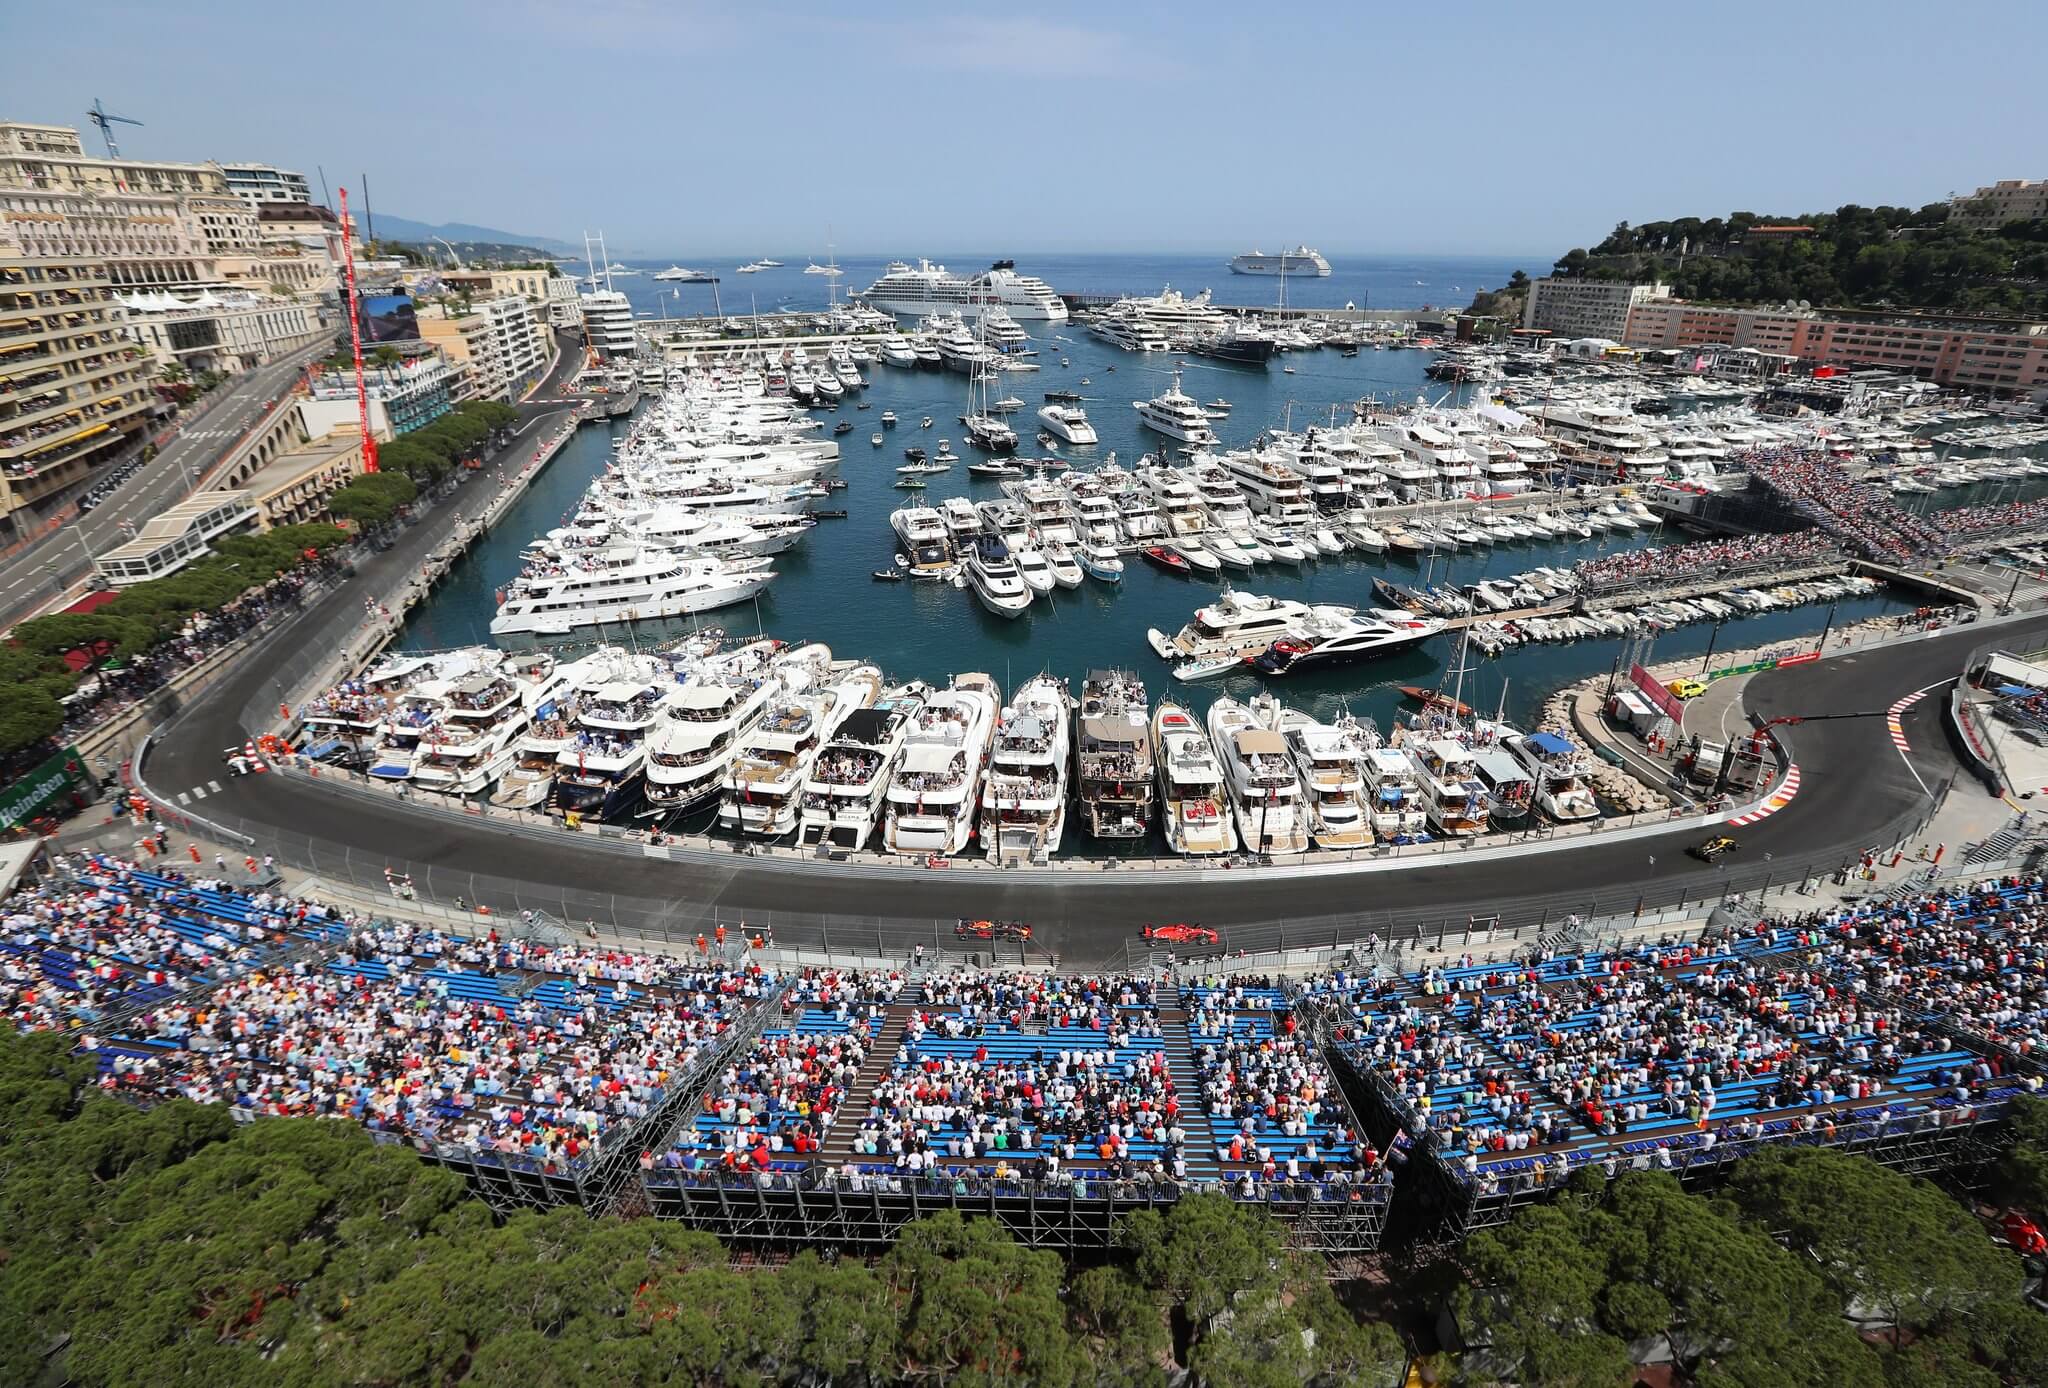 Une tribune sur le grand prix de formule 1 de Monaco en bord de mer